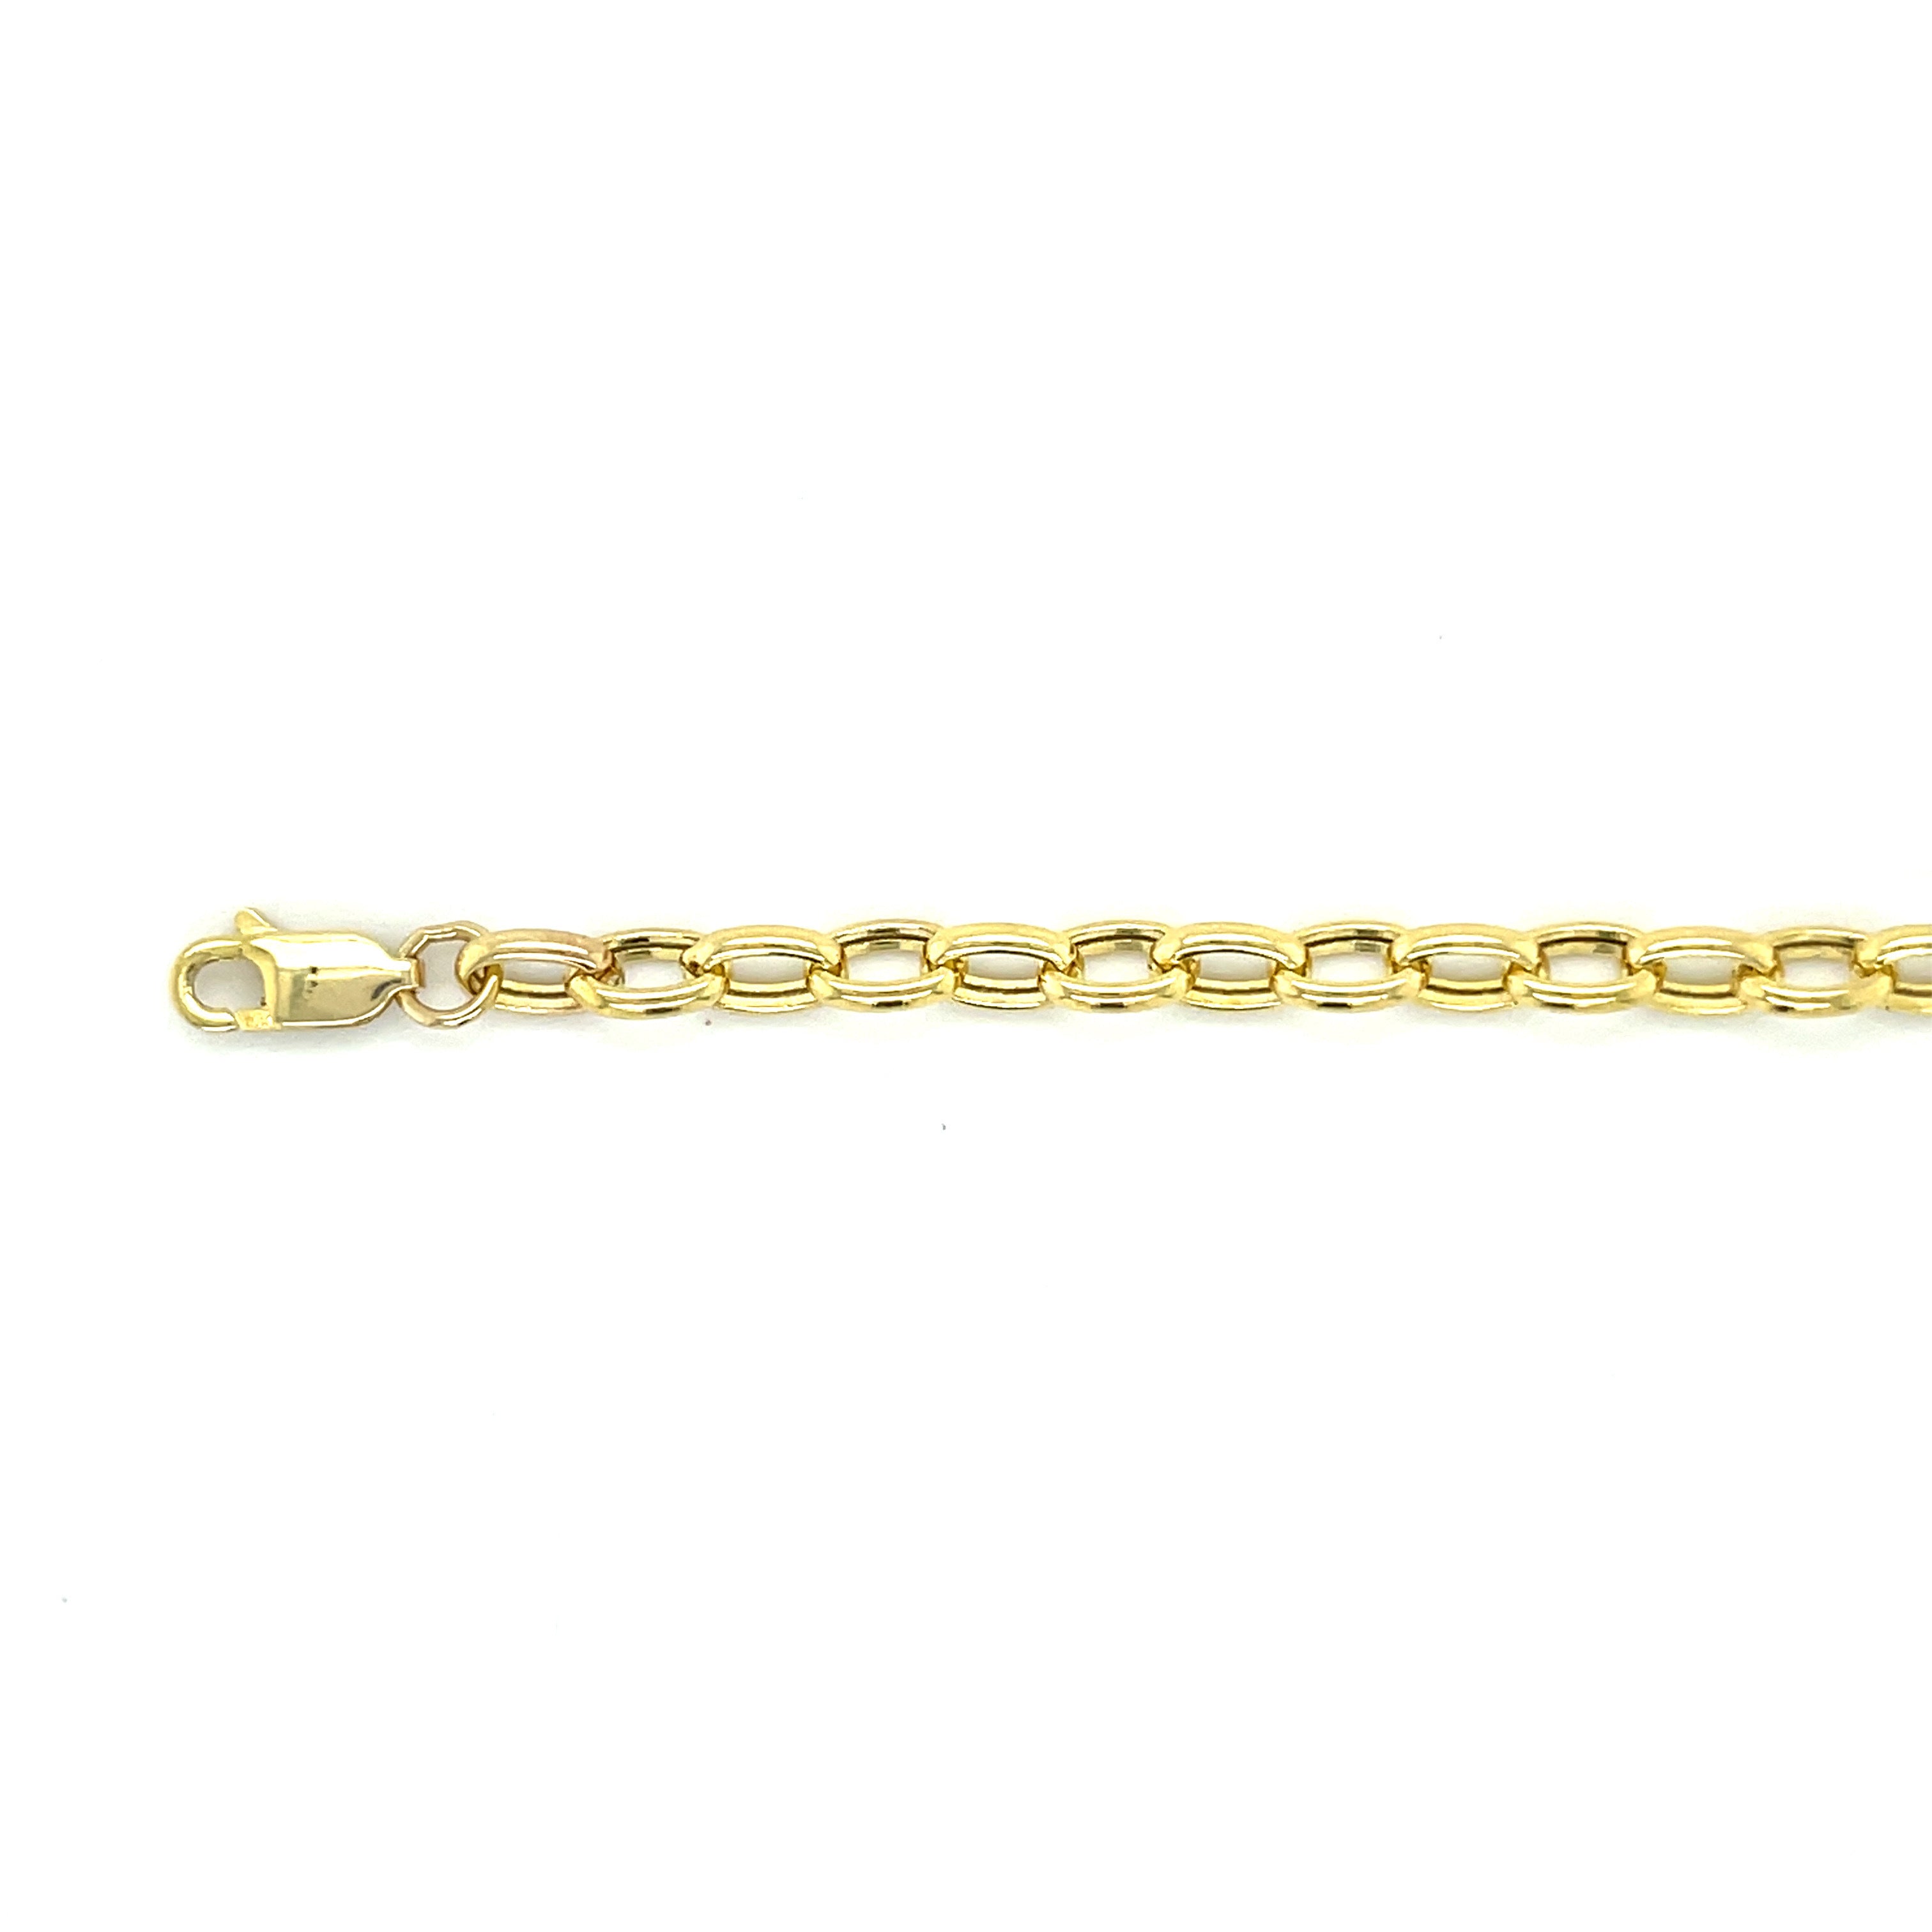 14k gold charm holder necklace